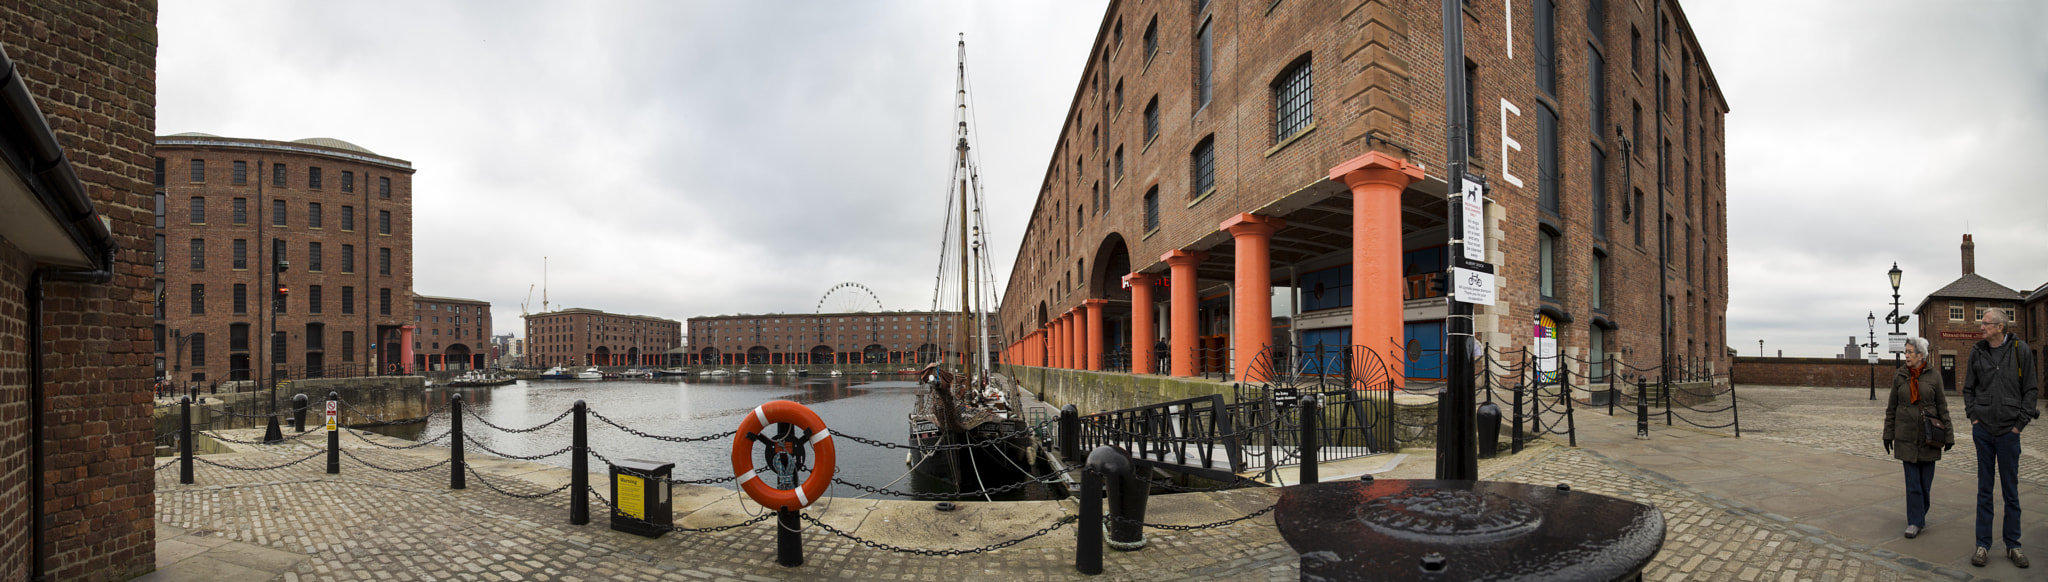 Liverpool Albert dock